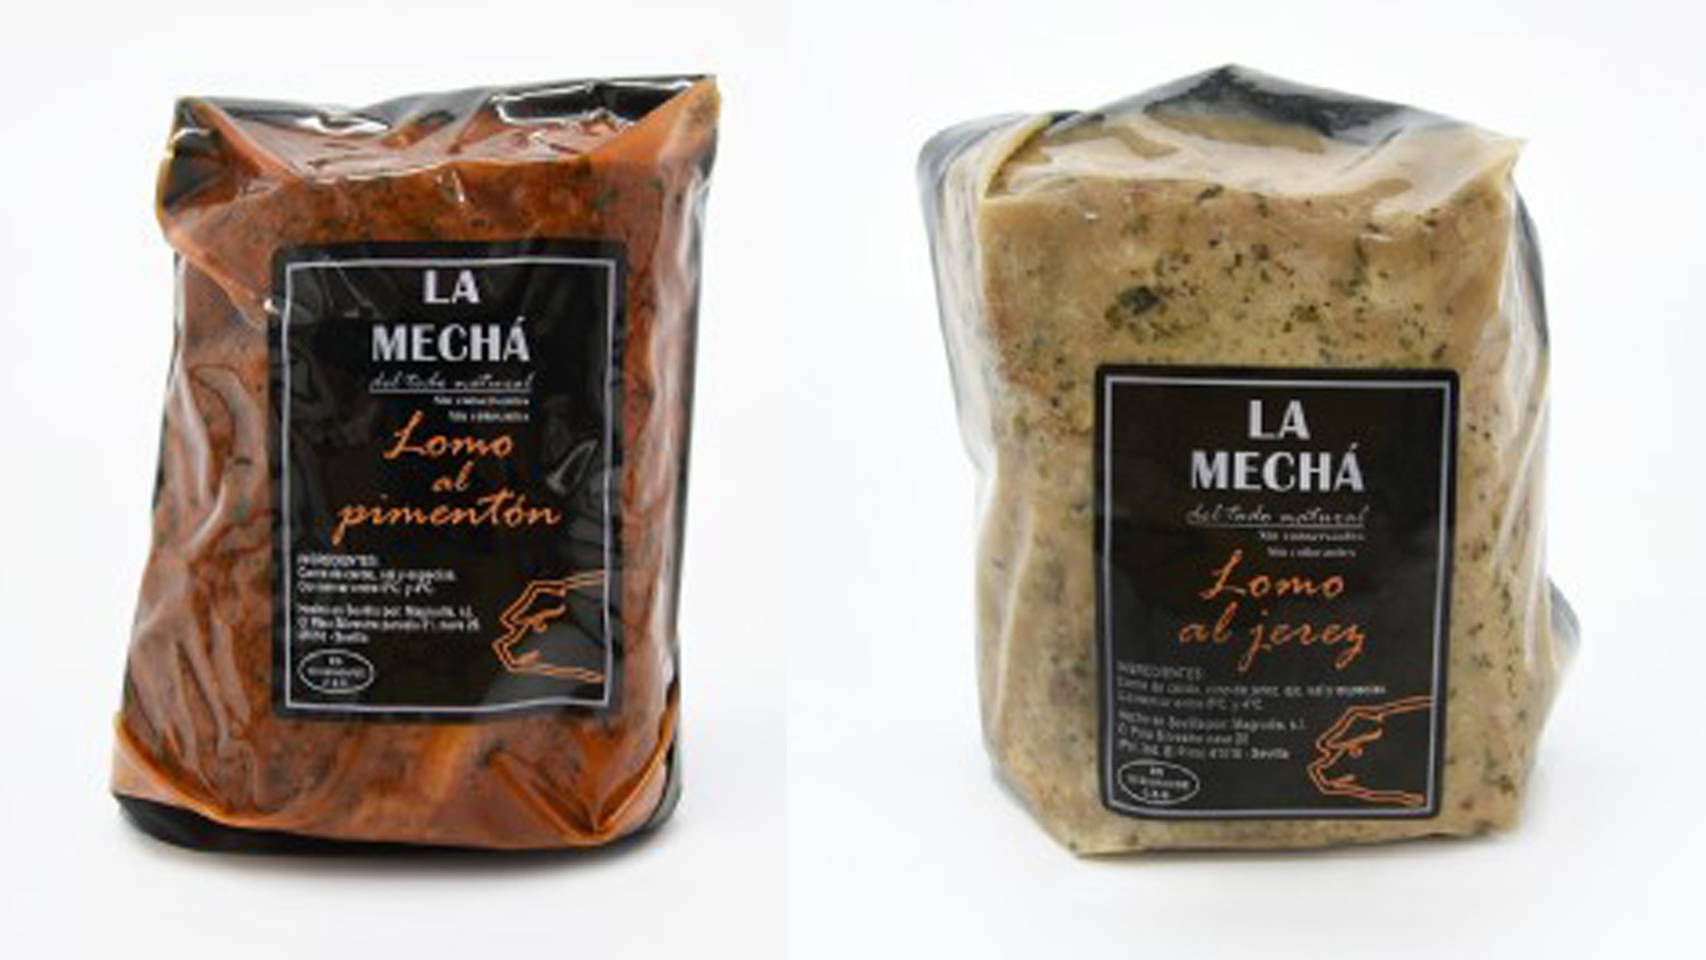 El lomo a la pimienta, a la izquierda y el lomo de Jerez, a la derecha, de la empresa Magrudis también están contaminados por listeria.